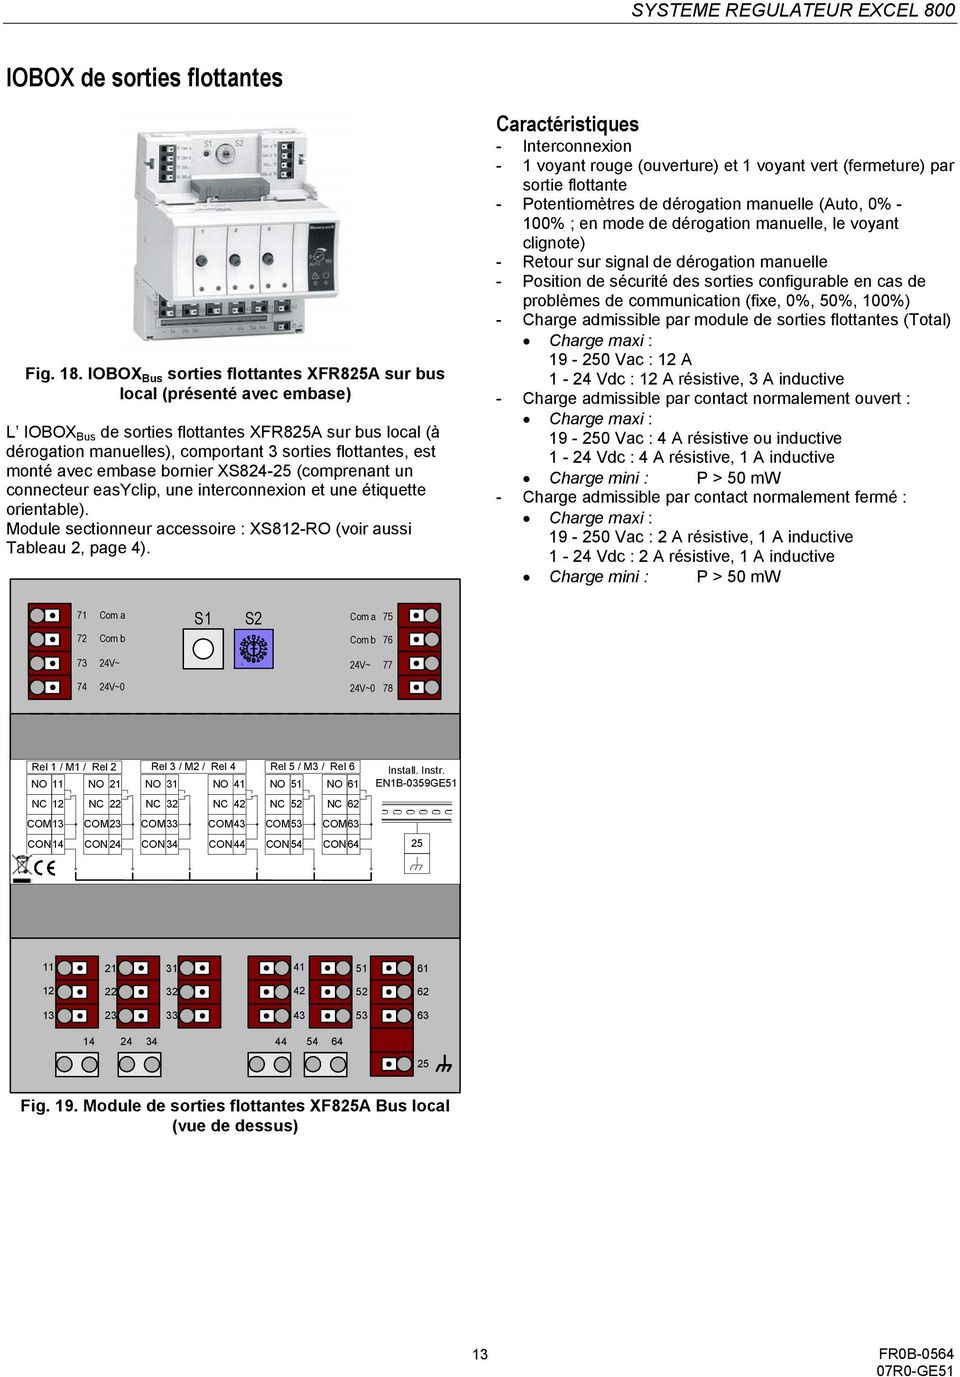 avec embase bornier XS824-25 (comprenant un connecteur easyclip, une interconnexion et une étiquette orientable). Module sectionneur accessoire : XS812-RO (voir aussi Tableau 2, page 4).